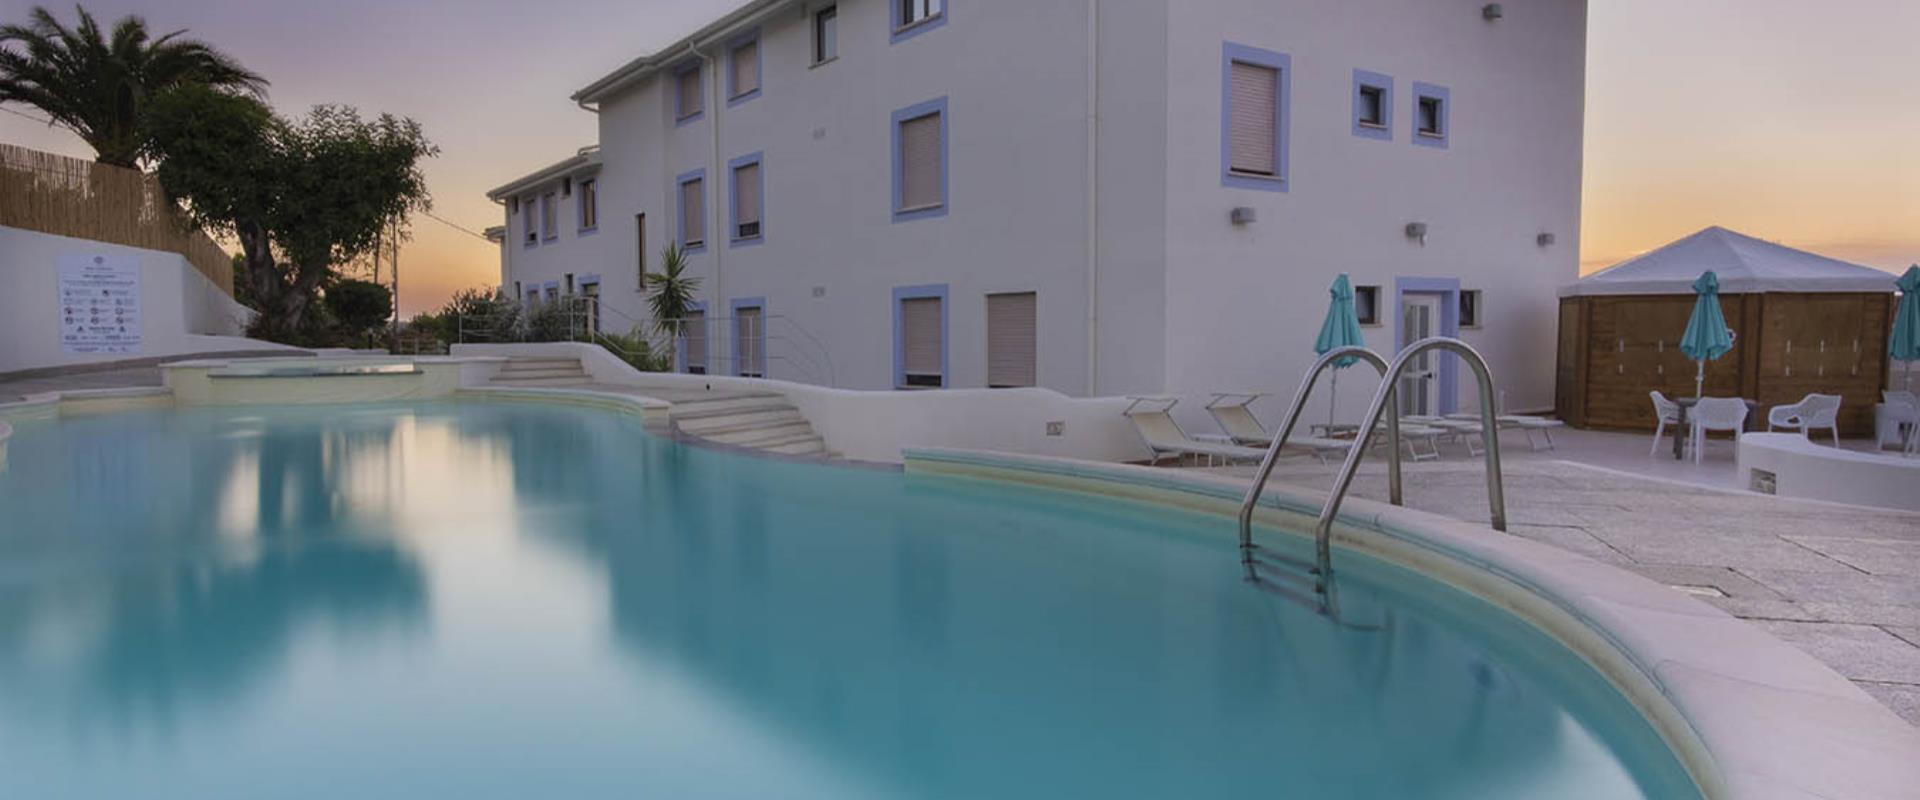 La piscina dell''Hotel Blumarea a Lu Bagnu - Castelsardo